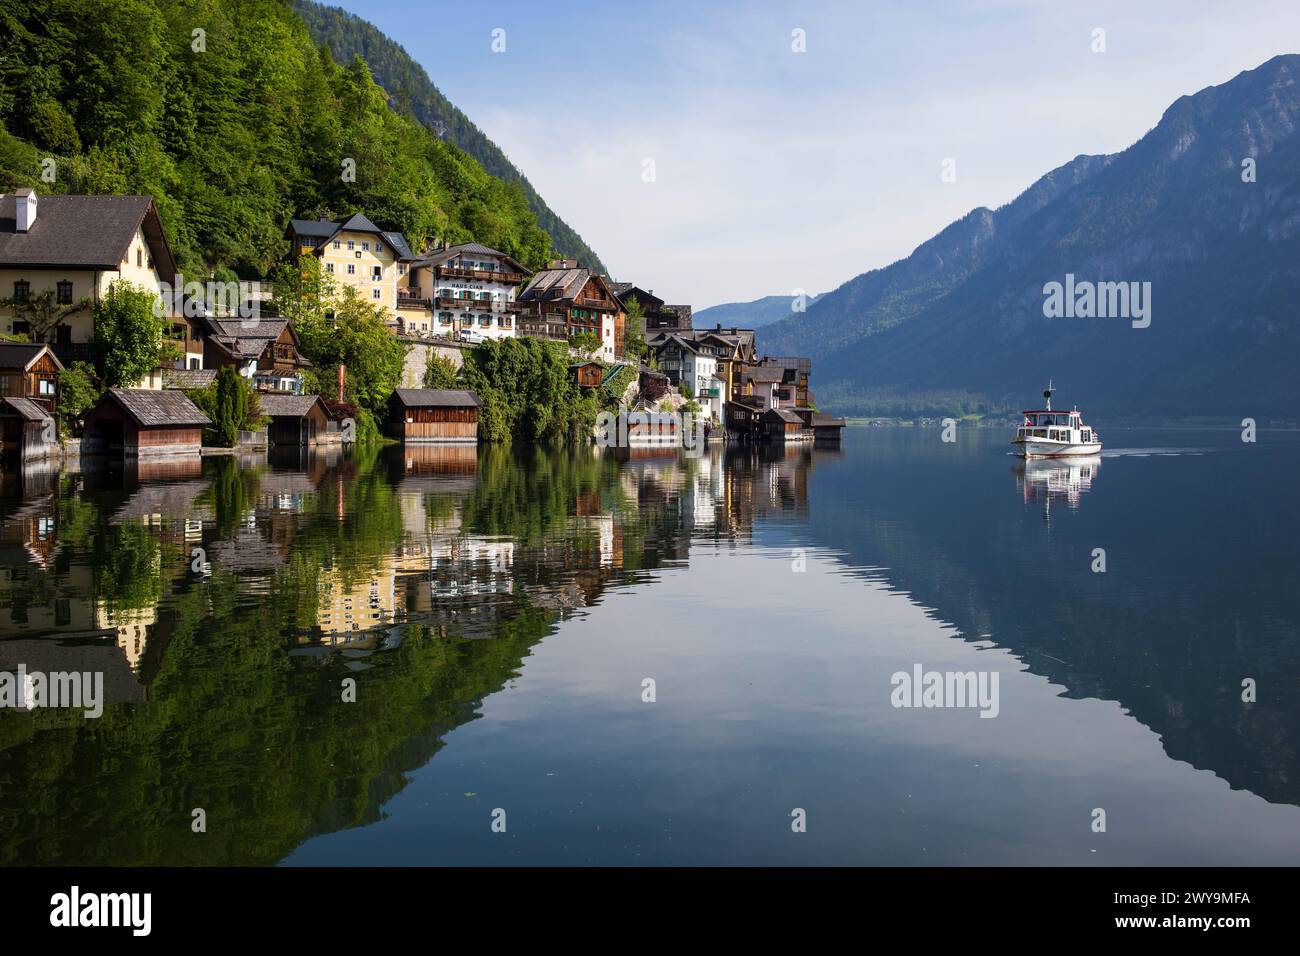 A beautiful village on the lake Hallstatt in Austria Stock Photo